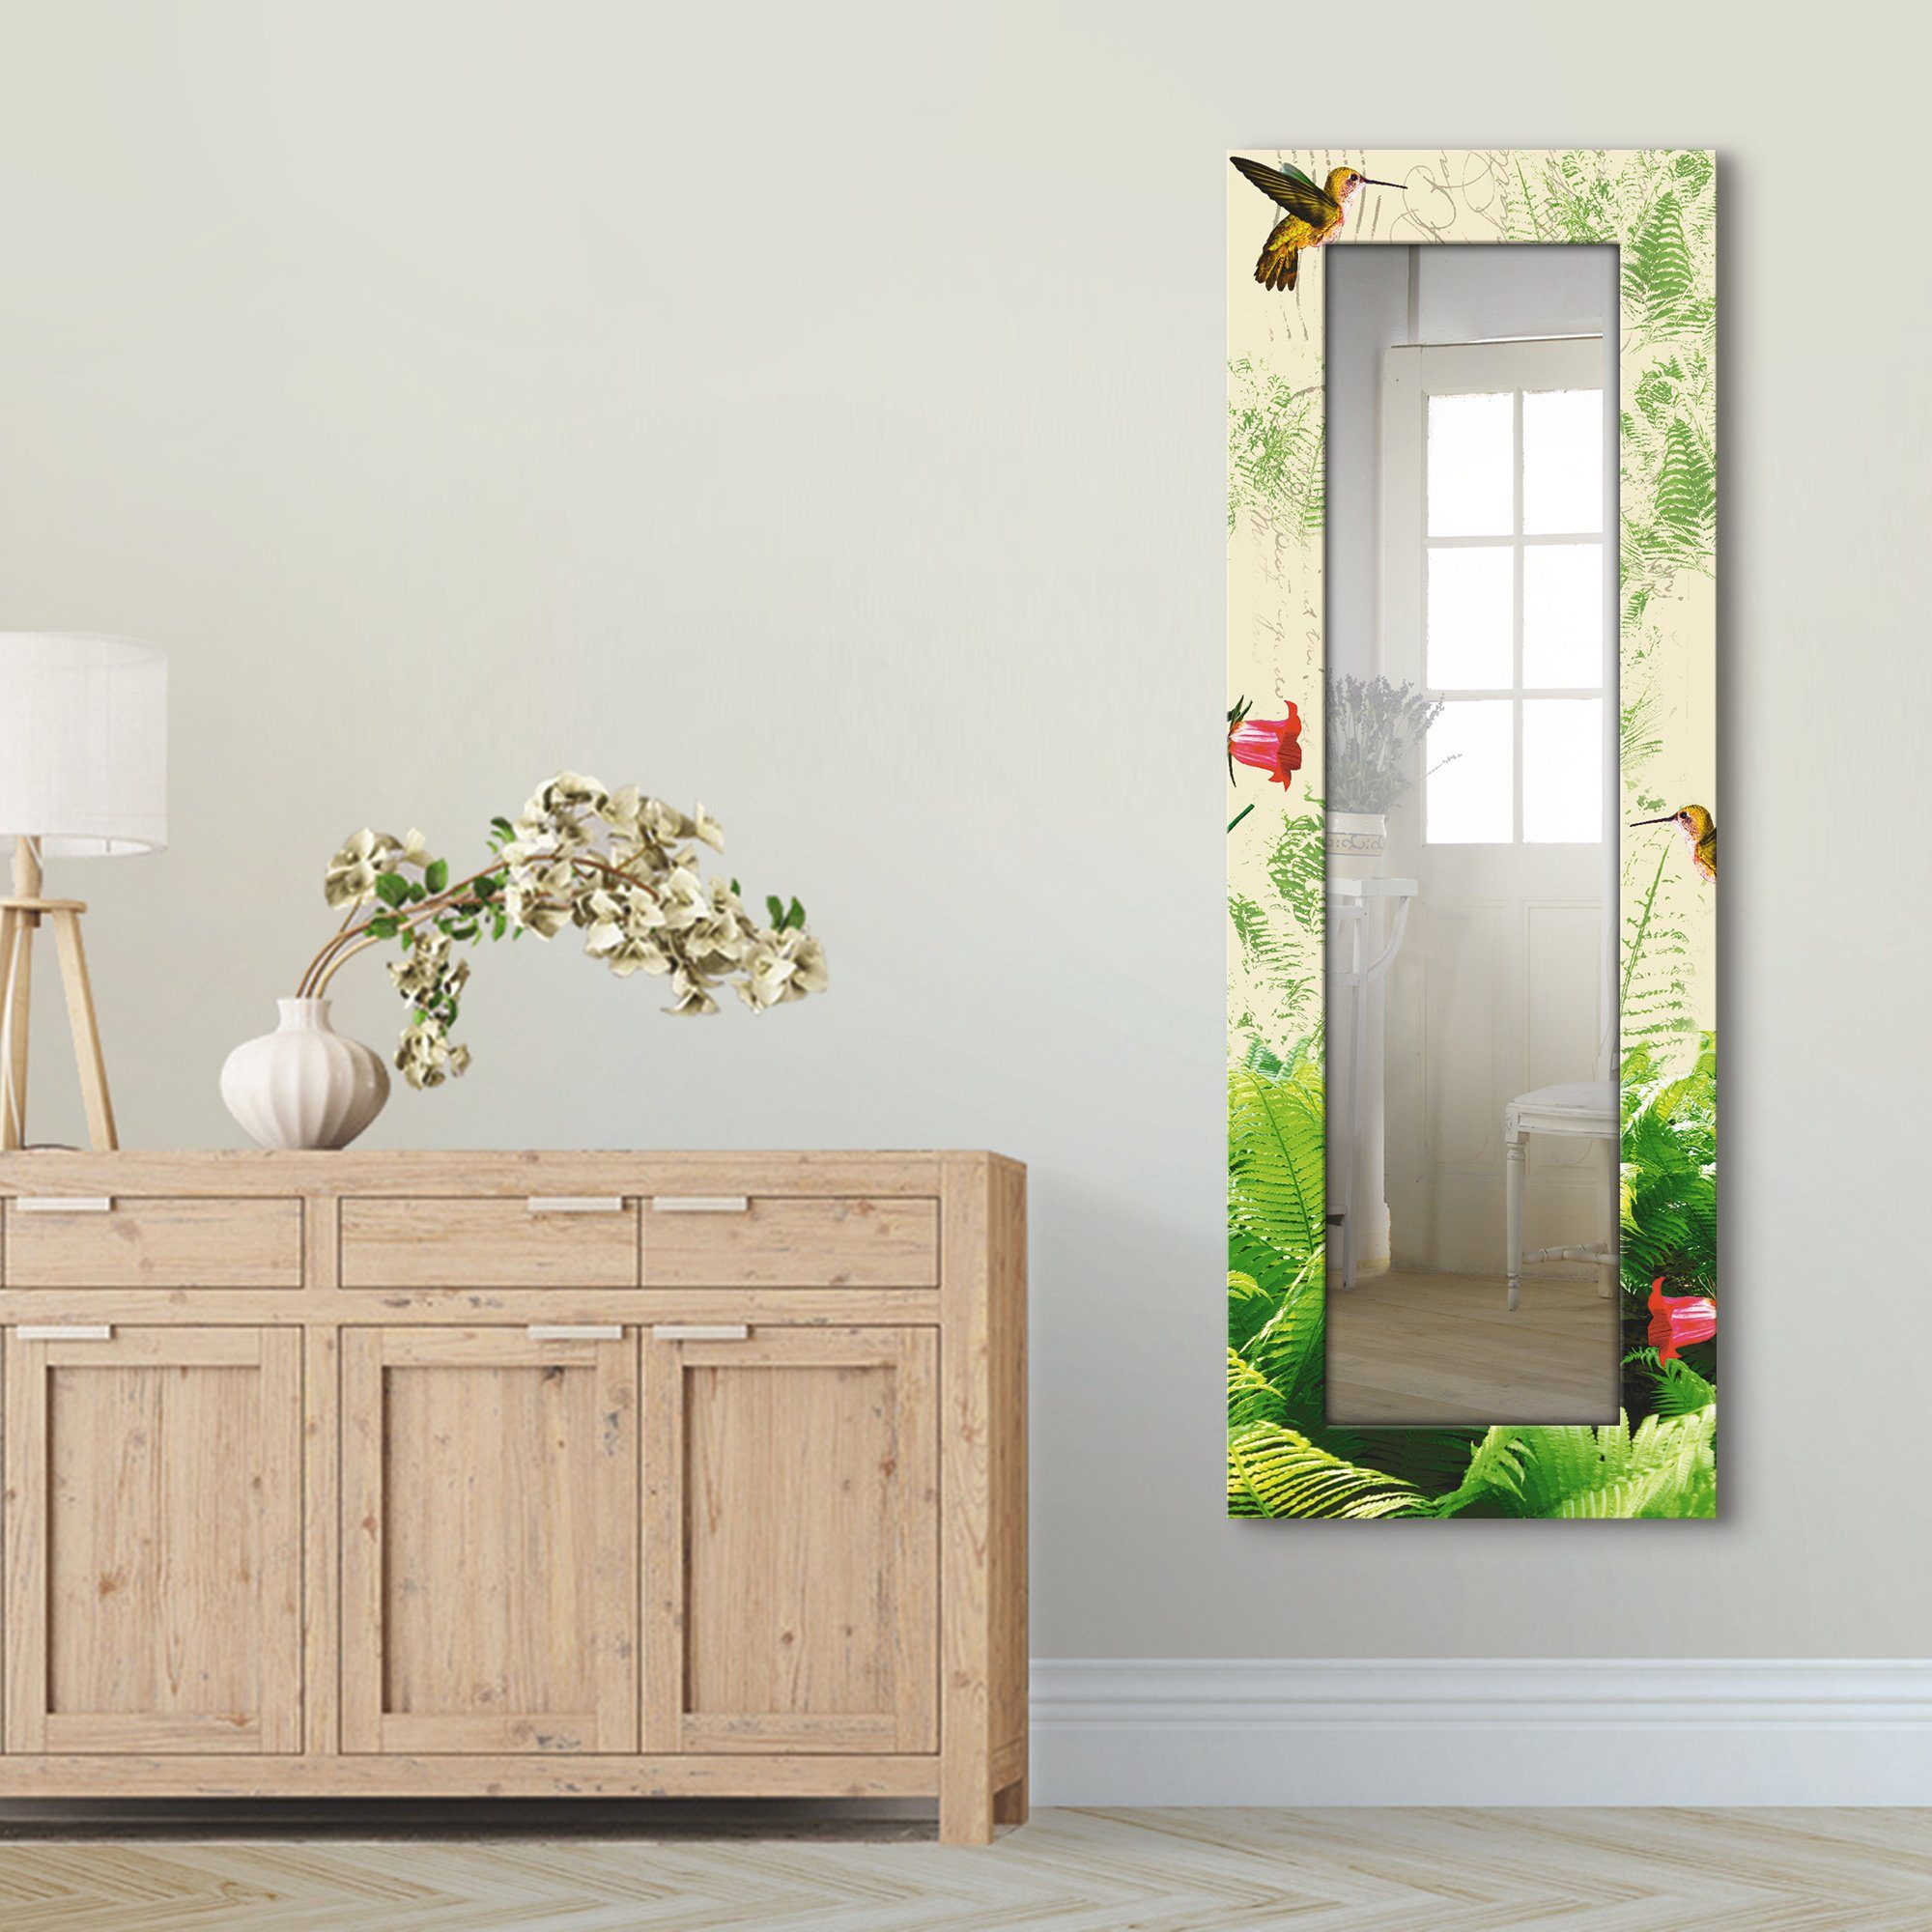 Artland Sierspiegel Kolibrie ingelijste spiegel voor het hele lichaam met motiefrand, geschikt voor kleine, smalle hal, halspiegel, mirror spiegel omrand om op te hangen